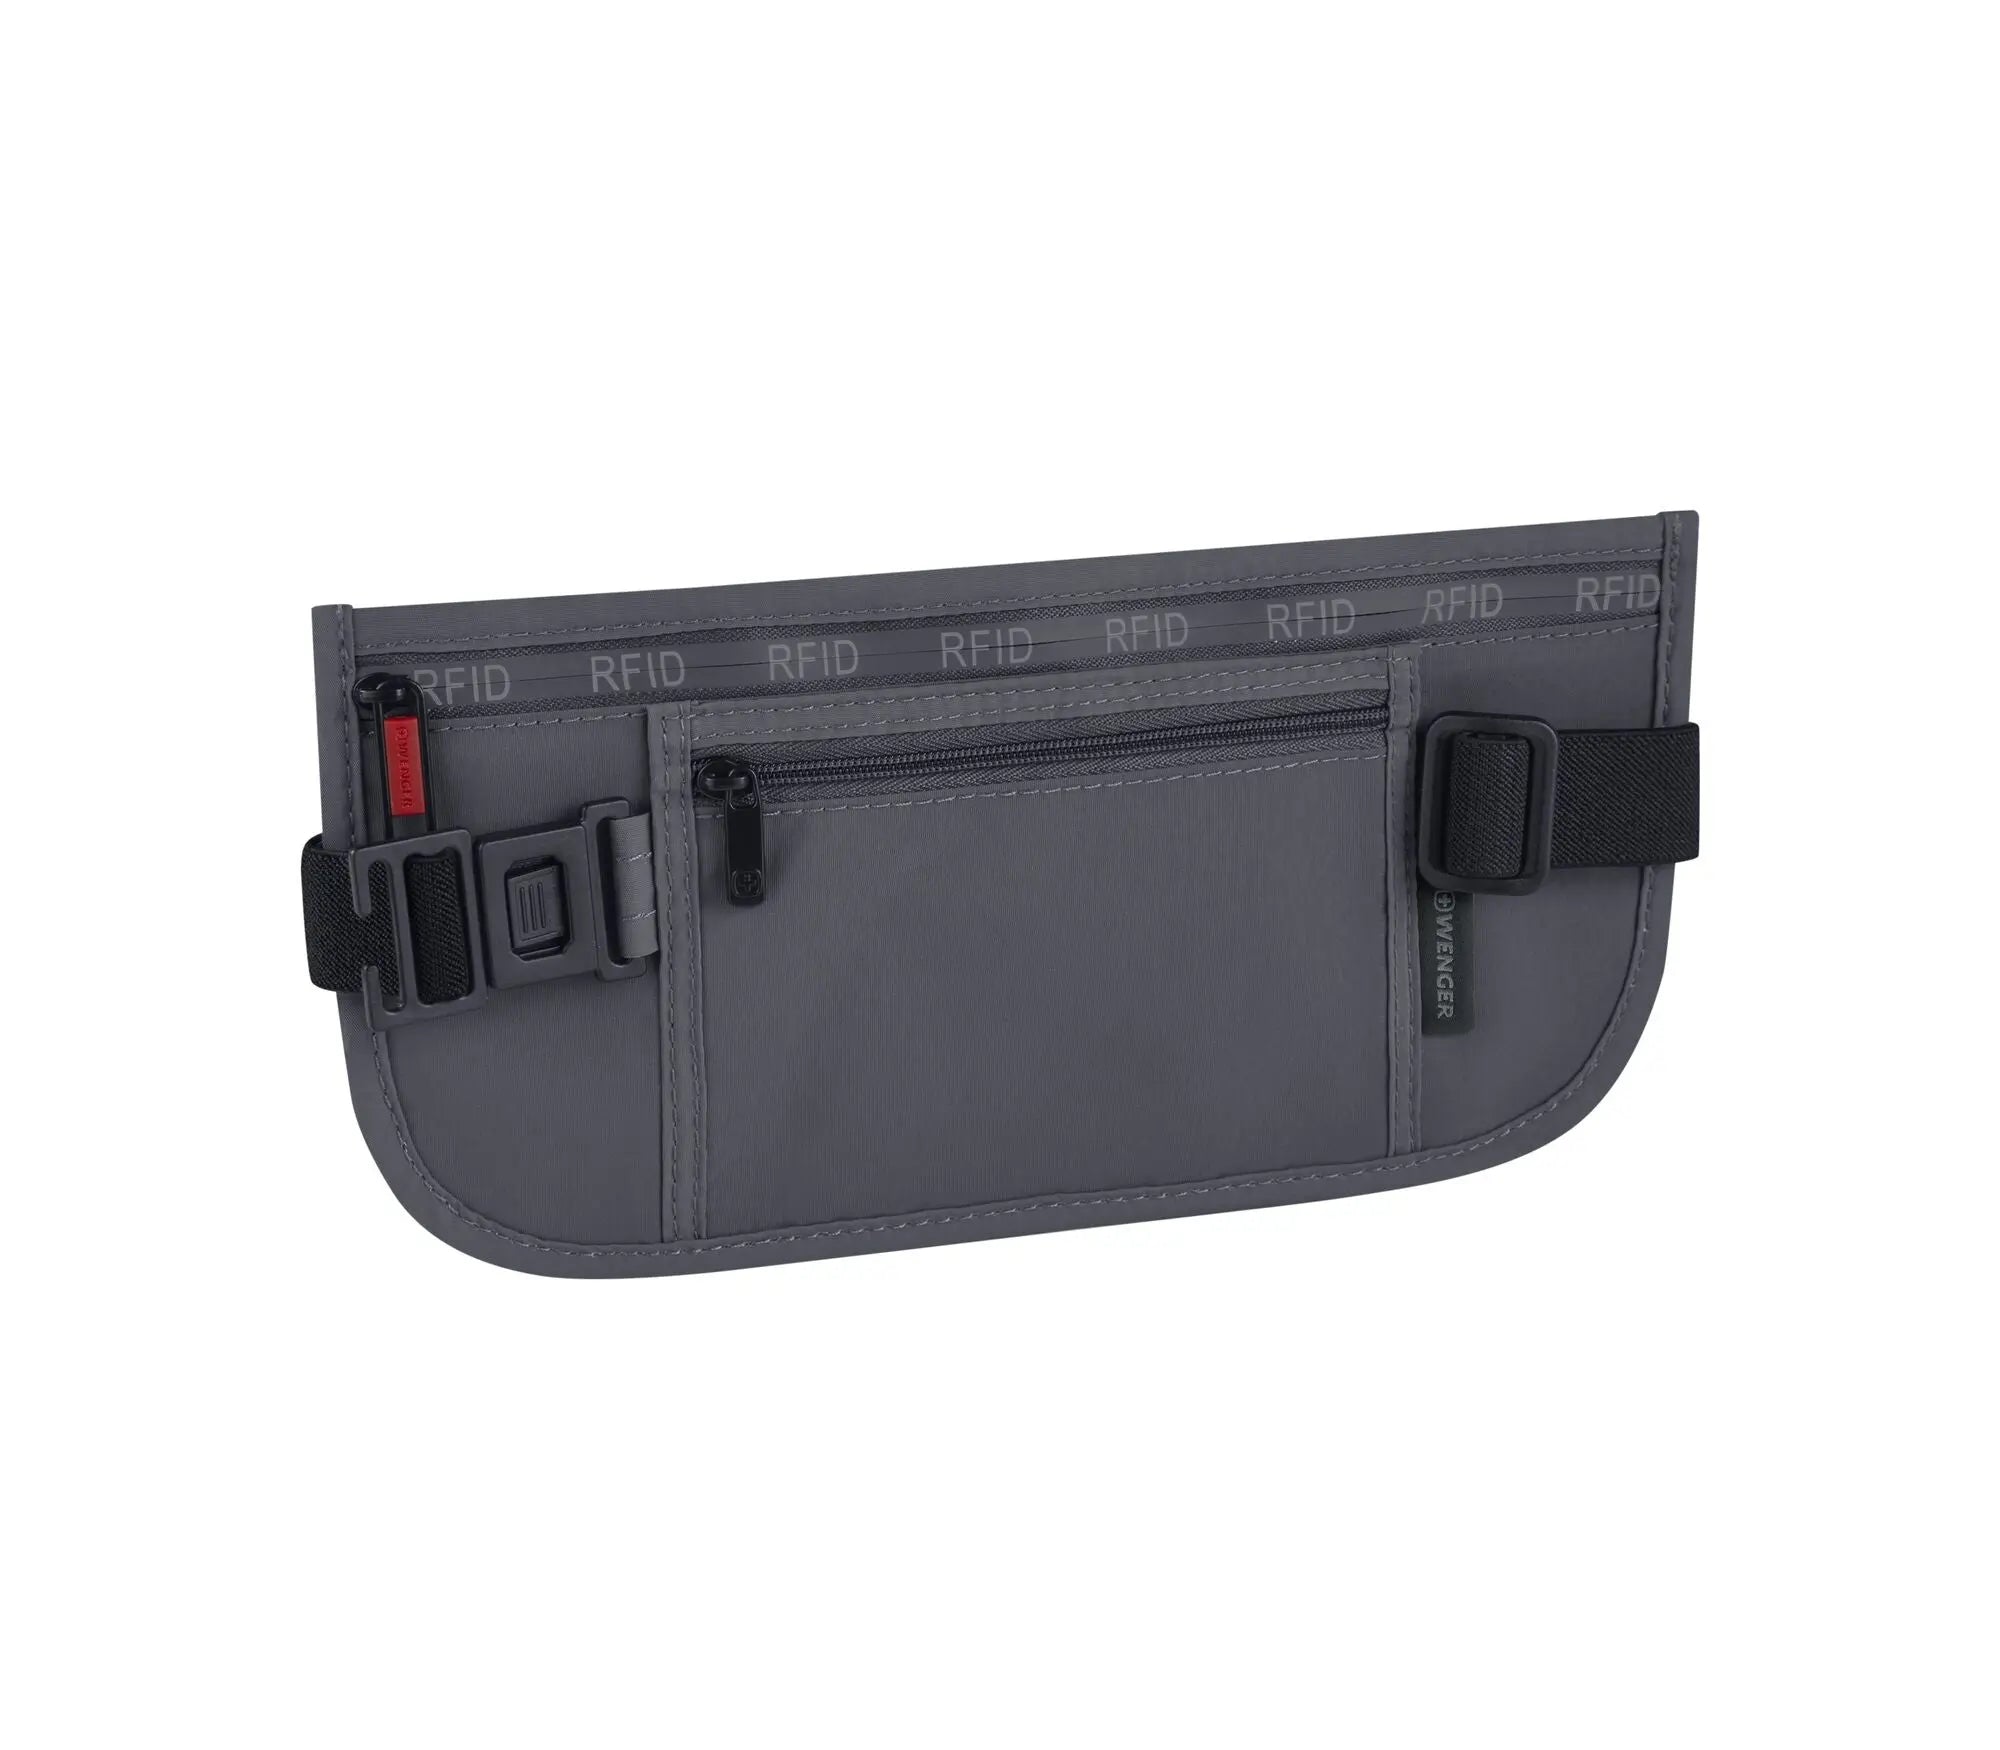 Cinturón de Seguridad de Cintura con Protección RFID Wenger Gris (611879) yapcr.com Costa Rica